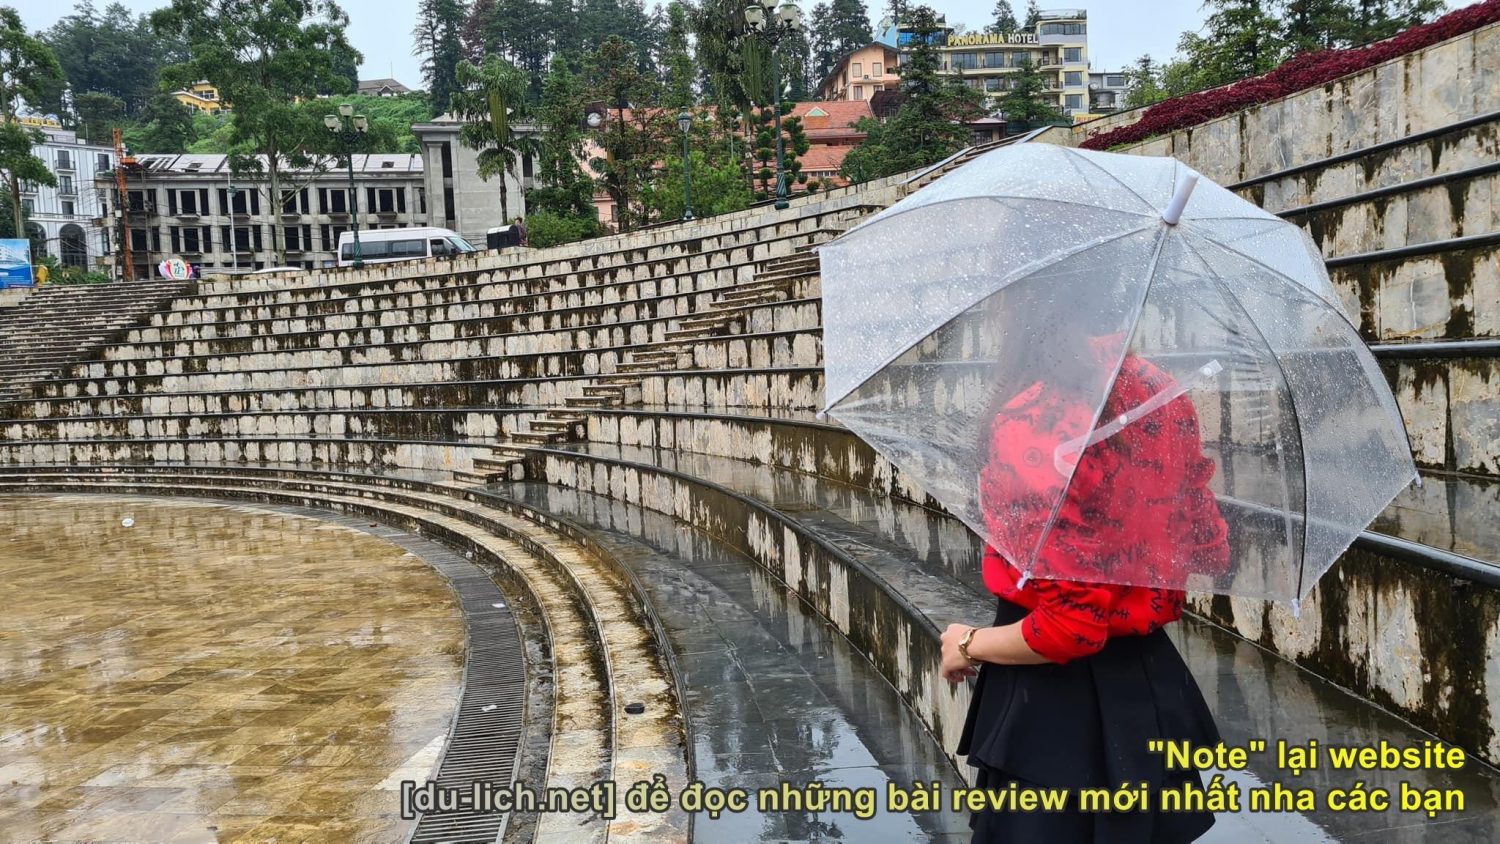 Chụp ảnh mưa ở quảng trường Sapa (Mai Chinh)